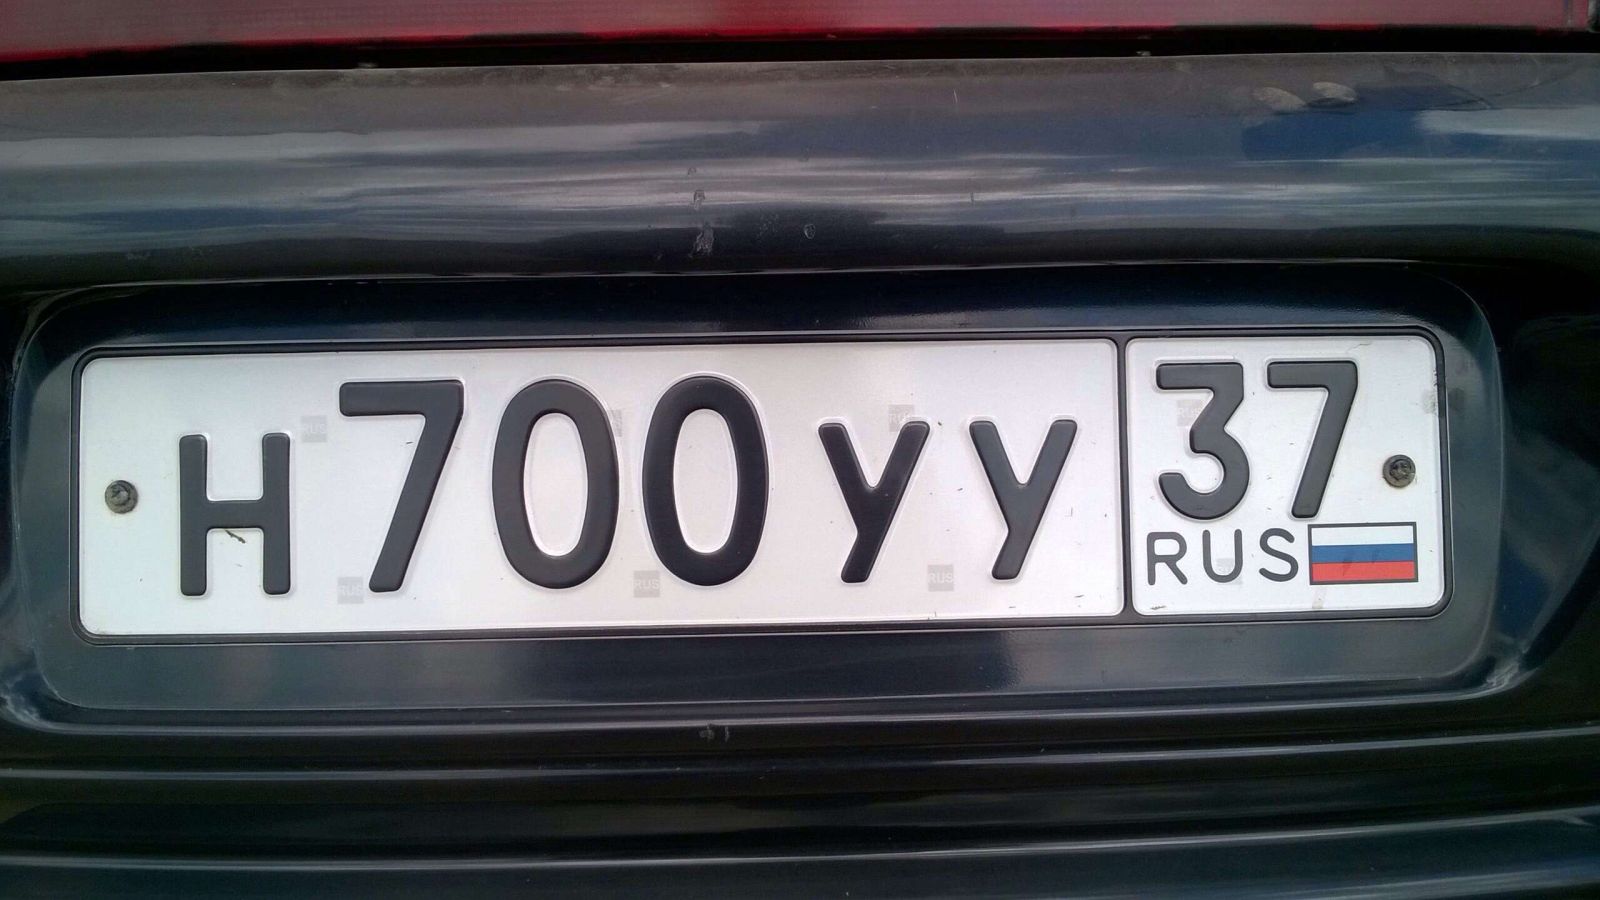 Чарах номер. Автомобильные номера. Гос номер. Номерной знак машины. Русские номера автомобилей.